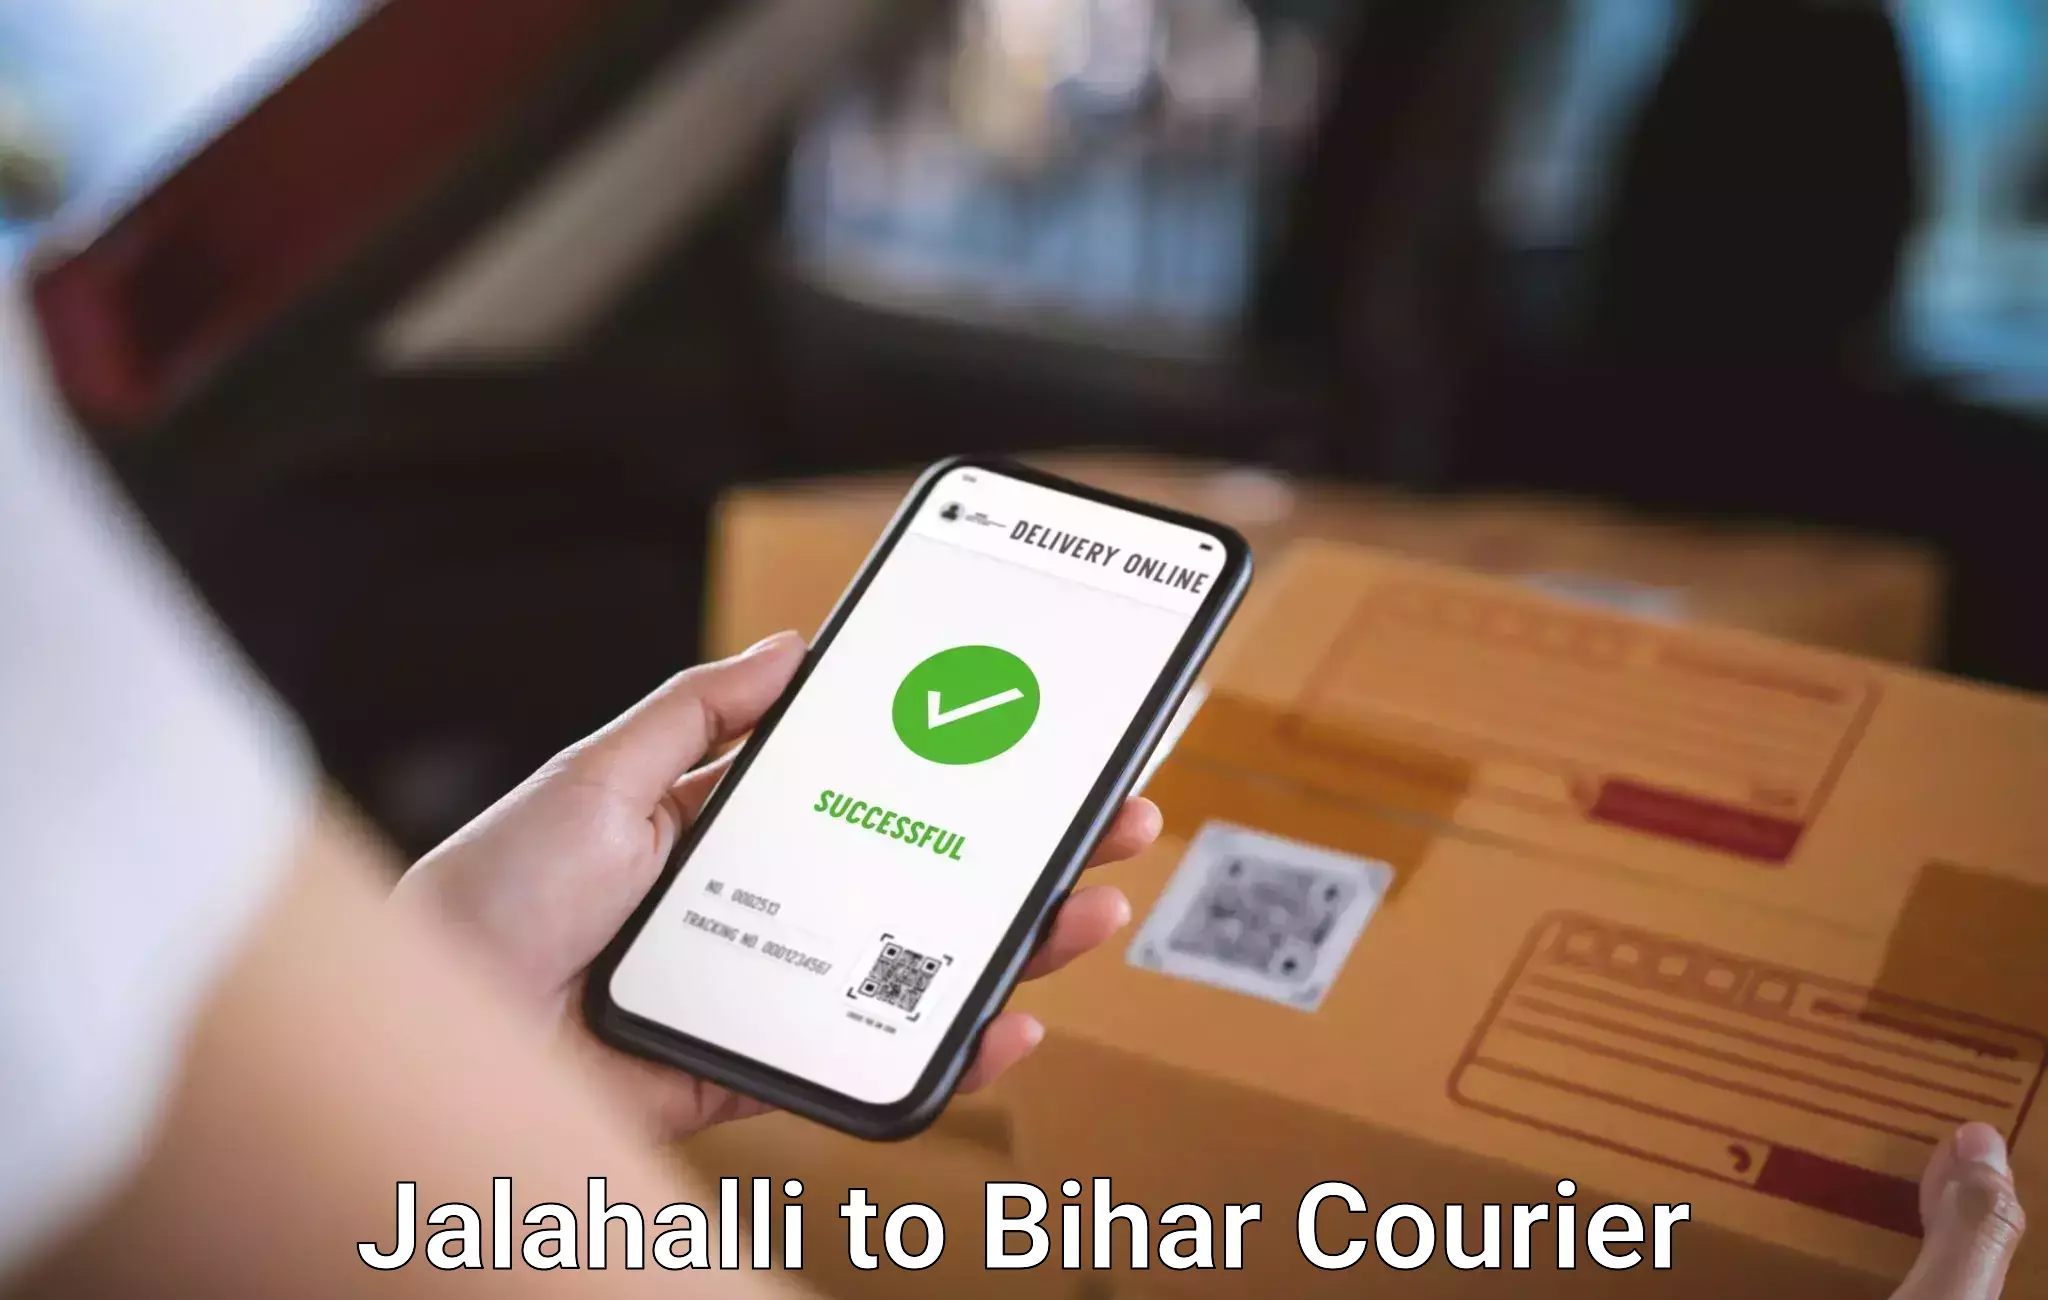 Baggage transport services Jalahalli to Bihar